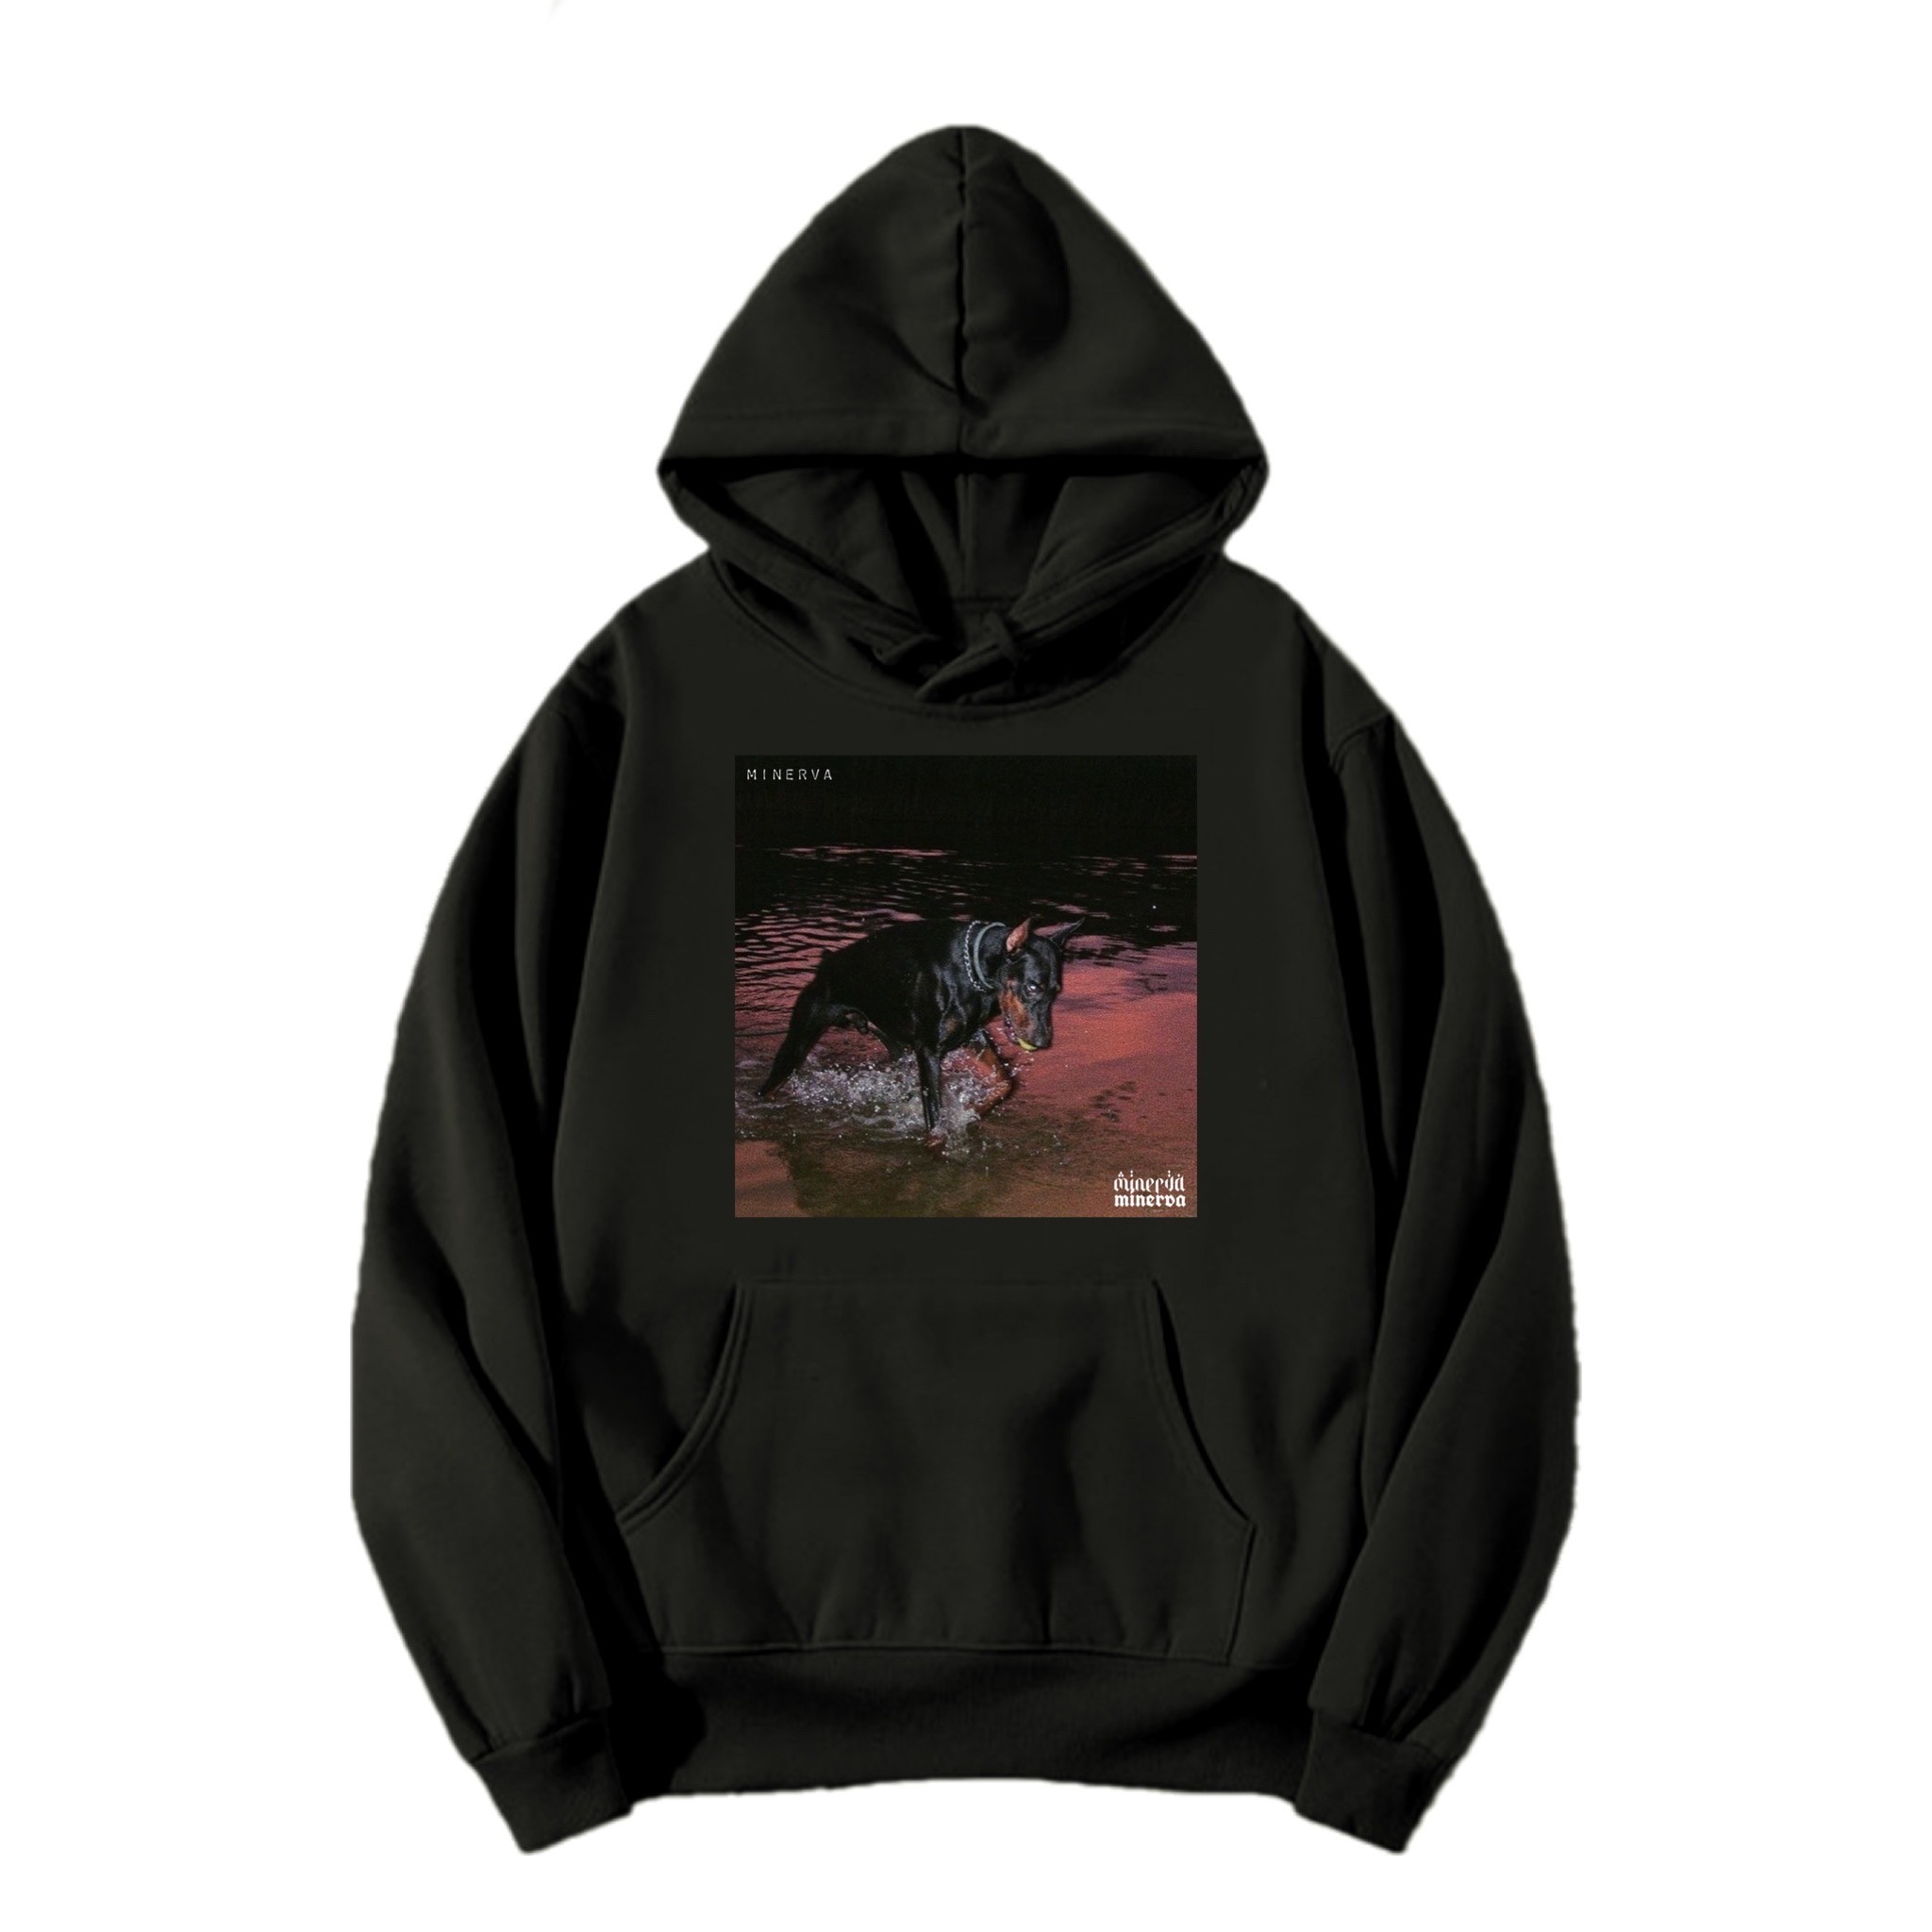 SAVAGE black regular fit printed hoodie